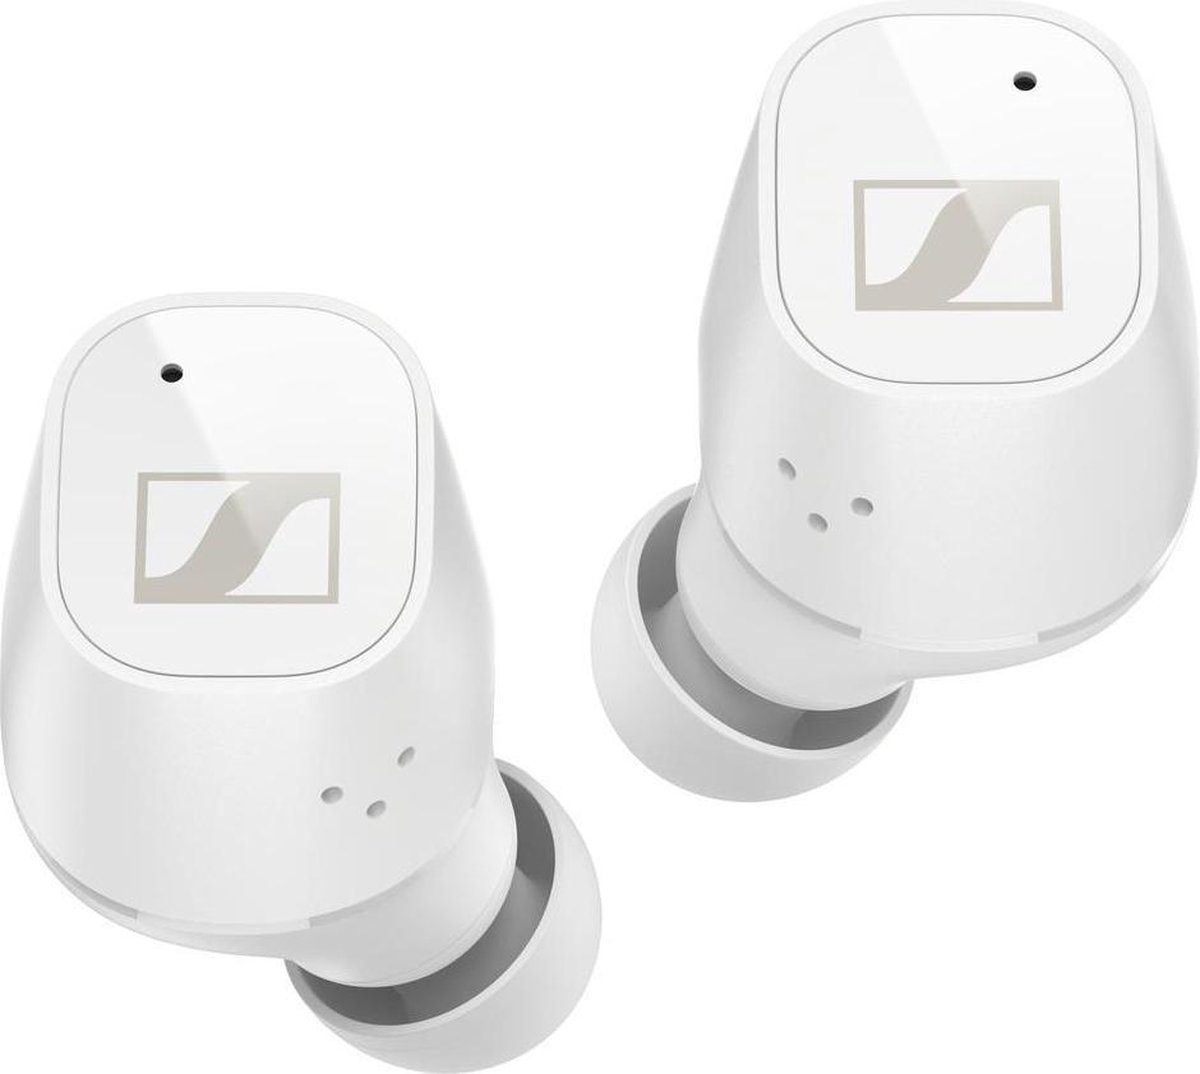 Sennheiser CX Plus True Wireless wit - In ear oordopjes